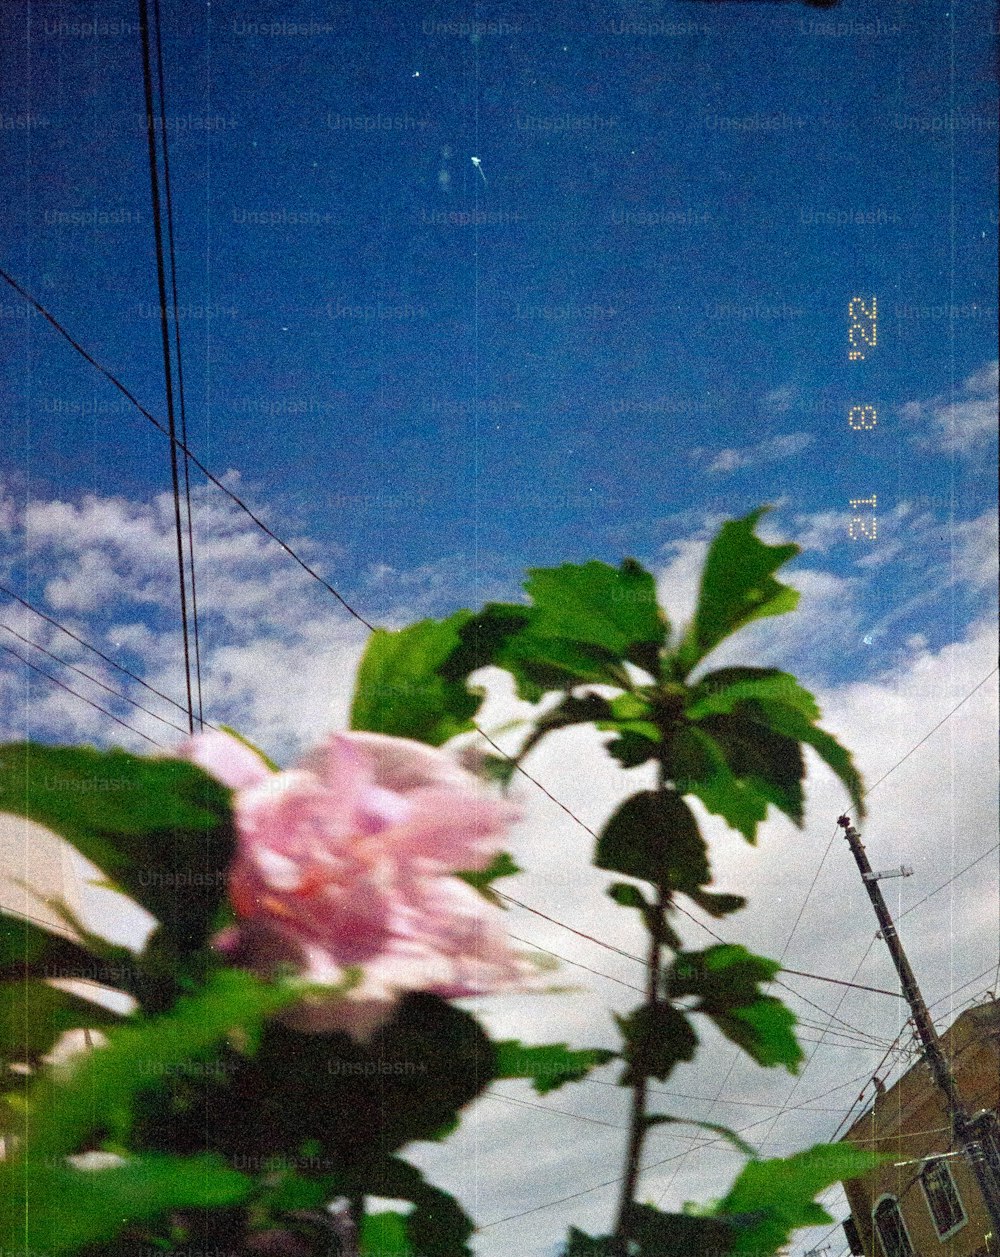 une fleur rose assise au sommet d’une plante verte luxuriante